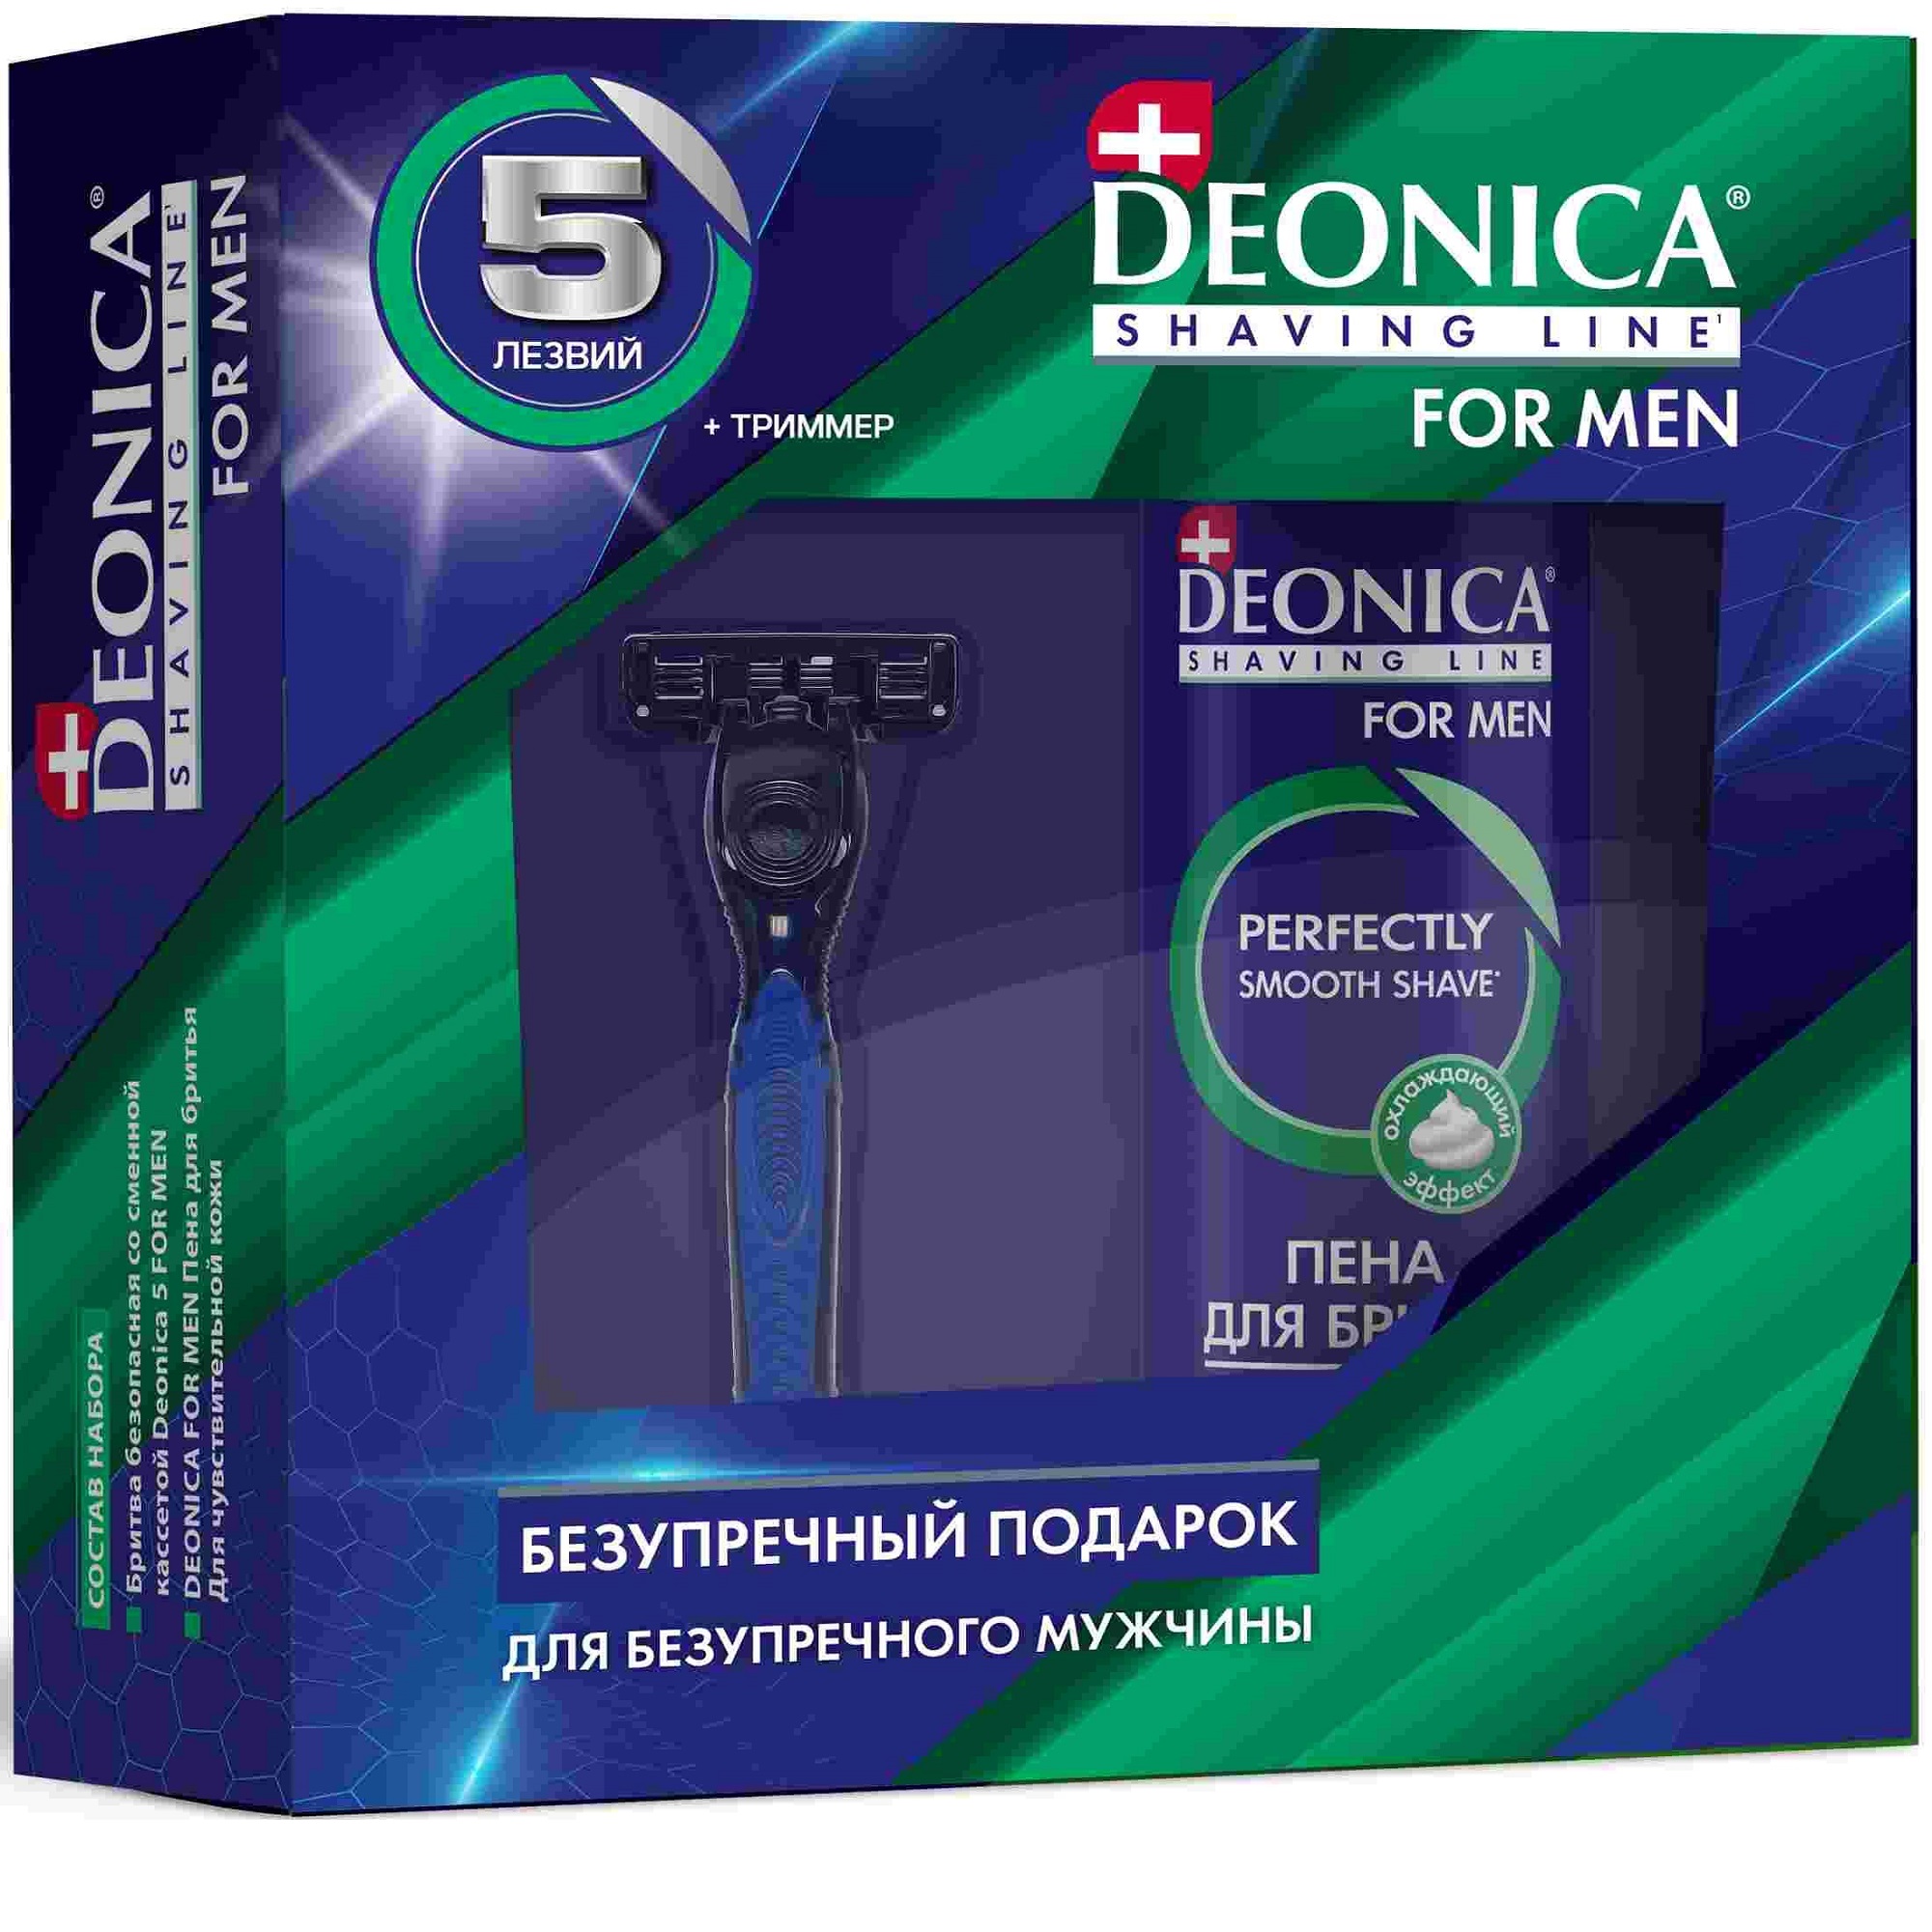 Набор подарочный Deonica пена для бритья и бритвенный станок набор подарочный deonica пена для бритья и бритвенный станок